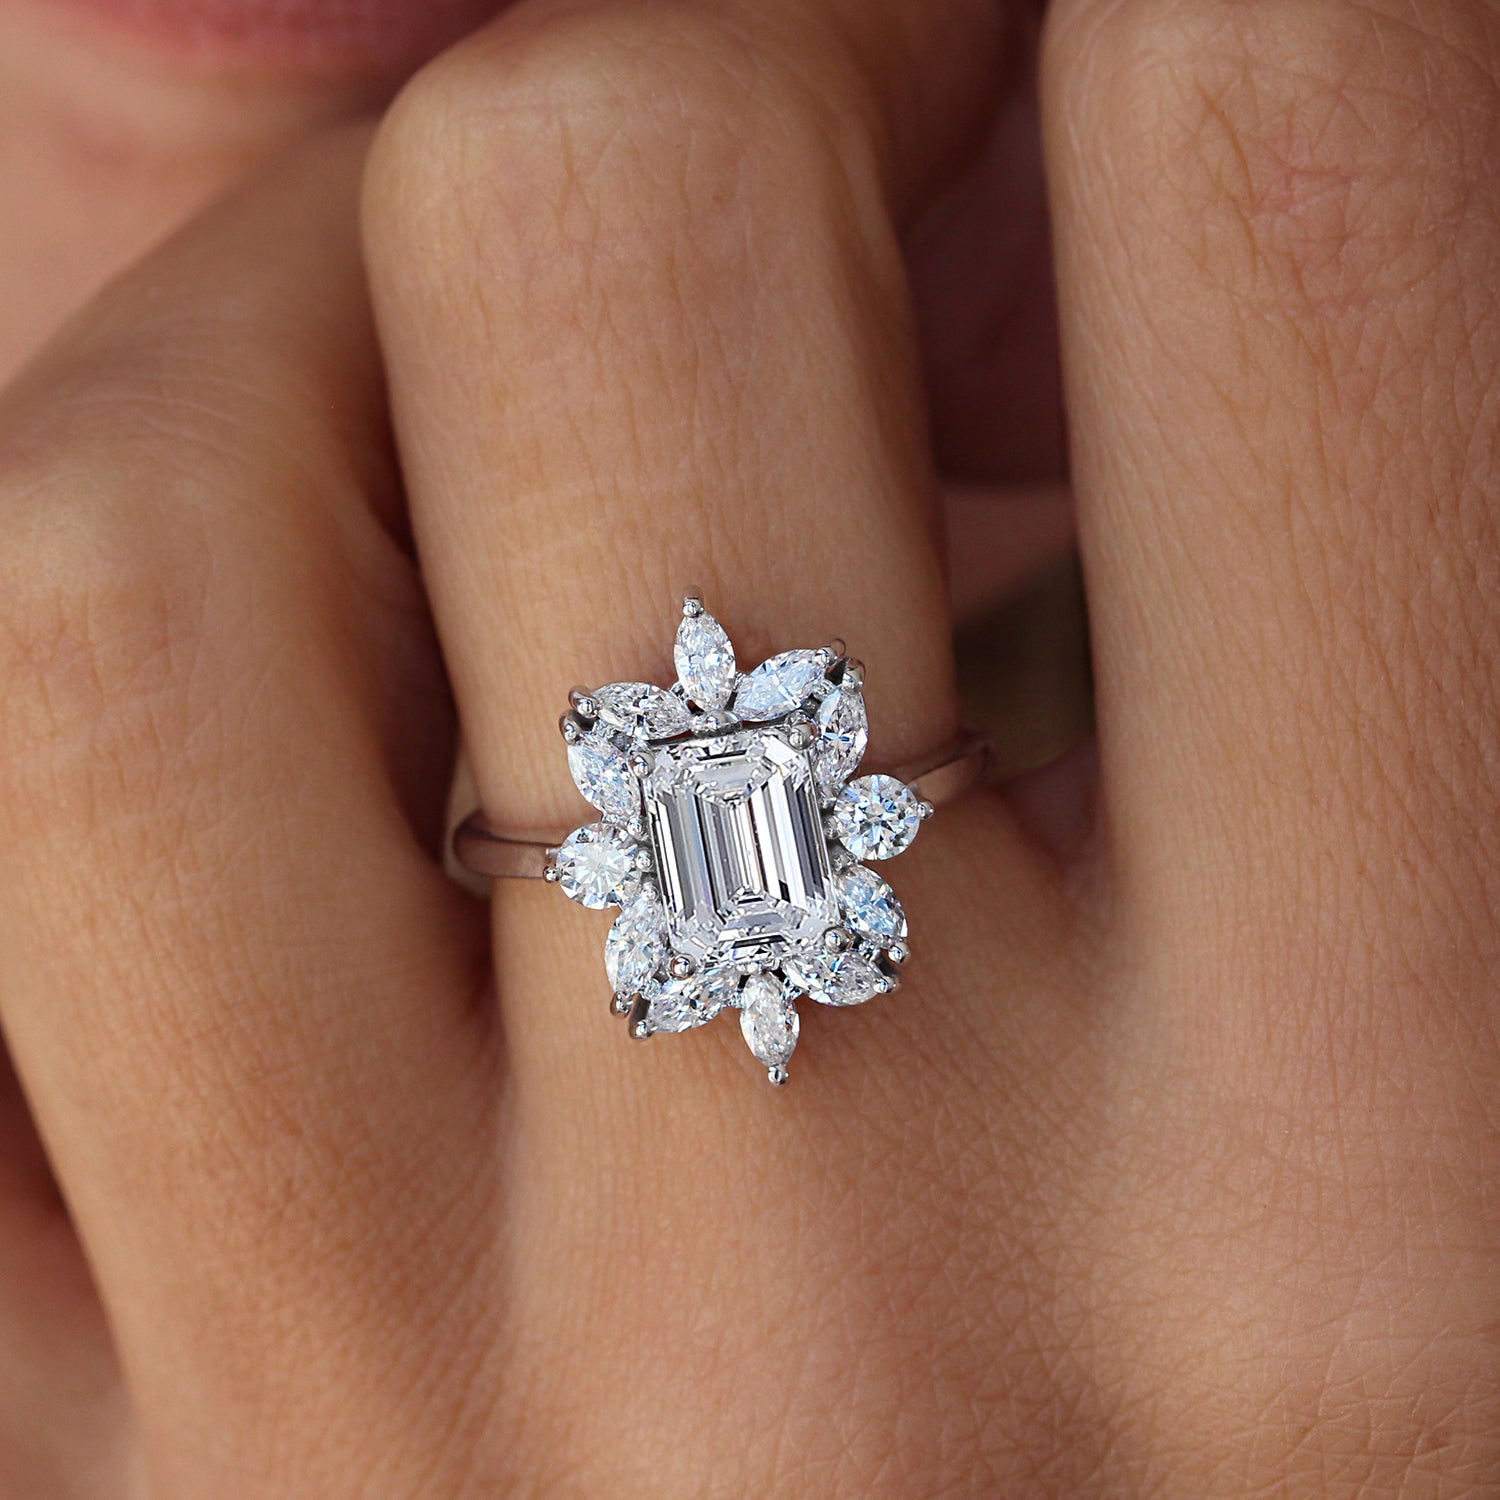 25 Royal Engagement Rings We Love